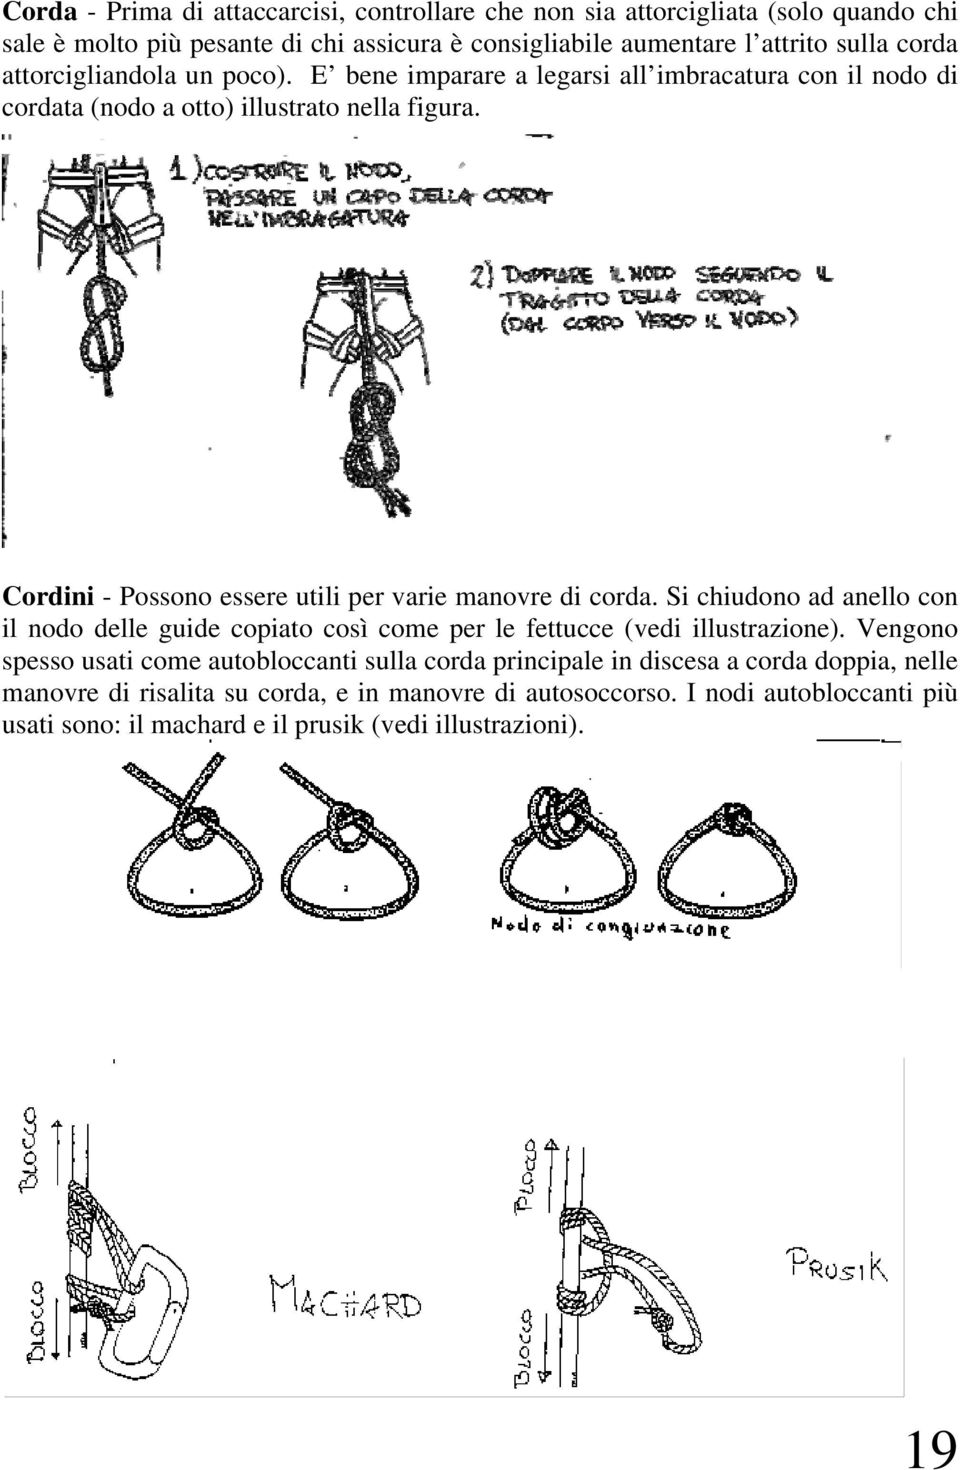 Cordini - Possono essere utili per varie manovre di corda. Si chiudono ad anello con il nodo delle guide copiato così come per le fettucce (vedi illustrazione).